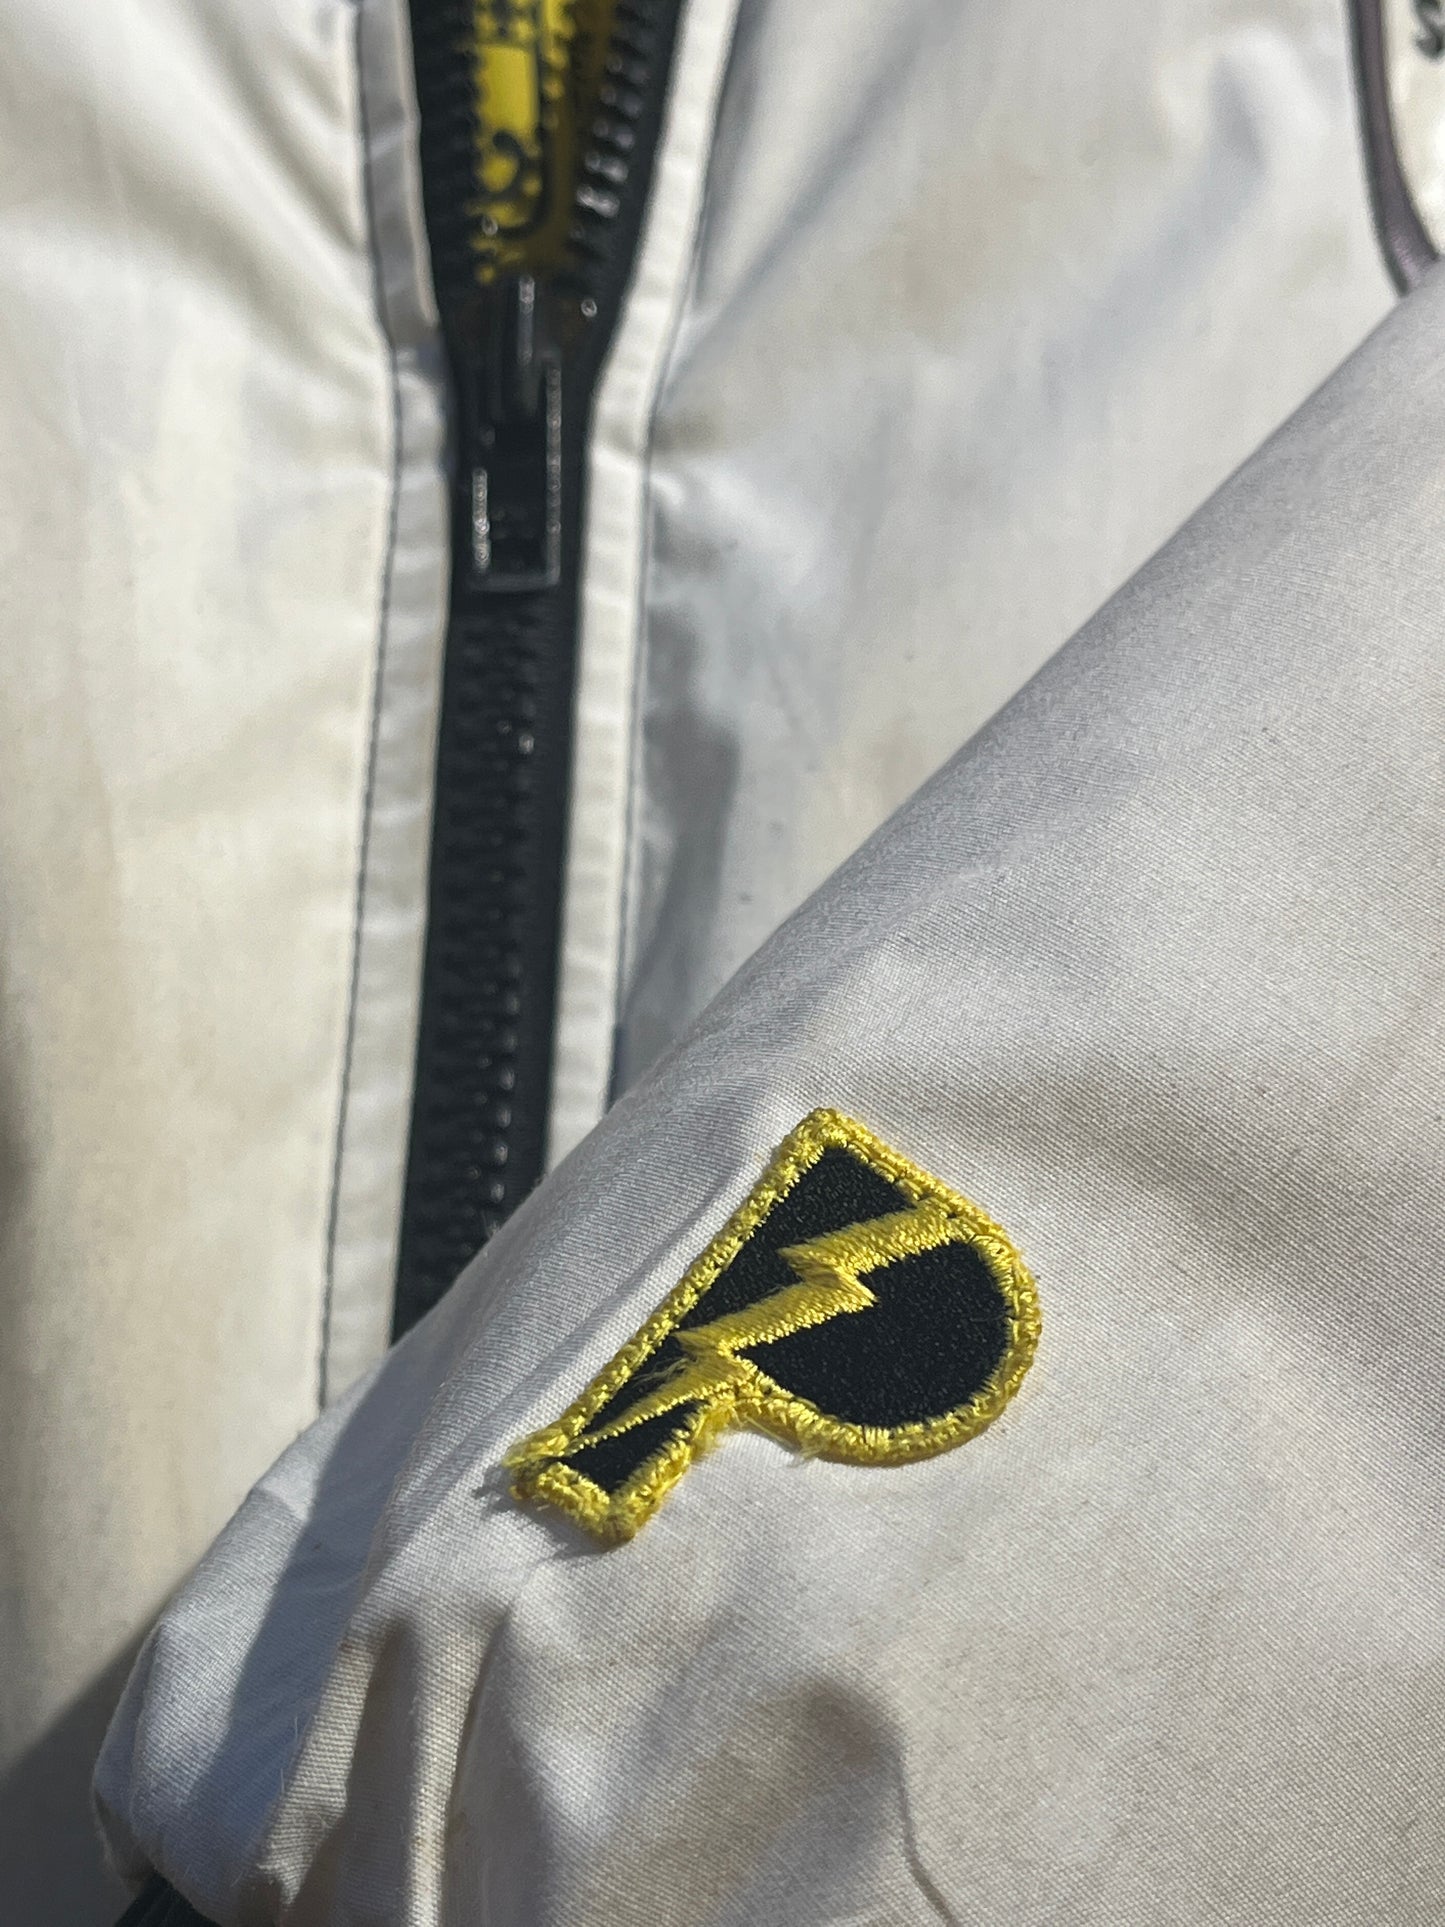 Vintage Pittsburg Steelers Jacket